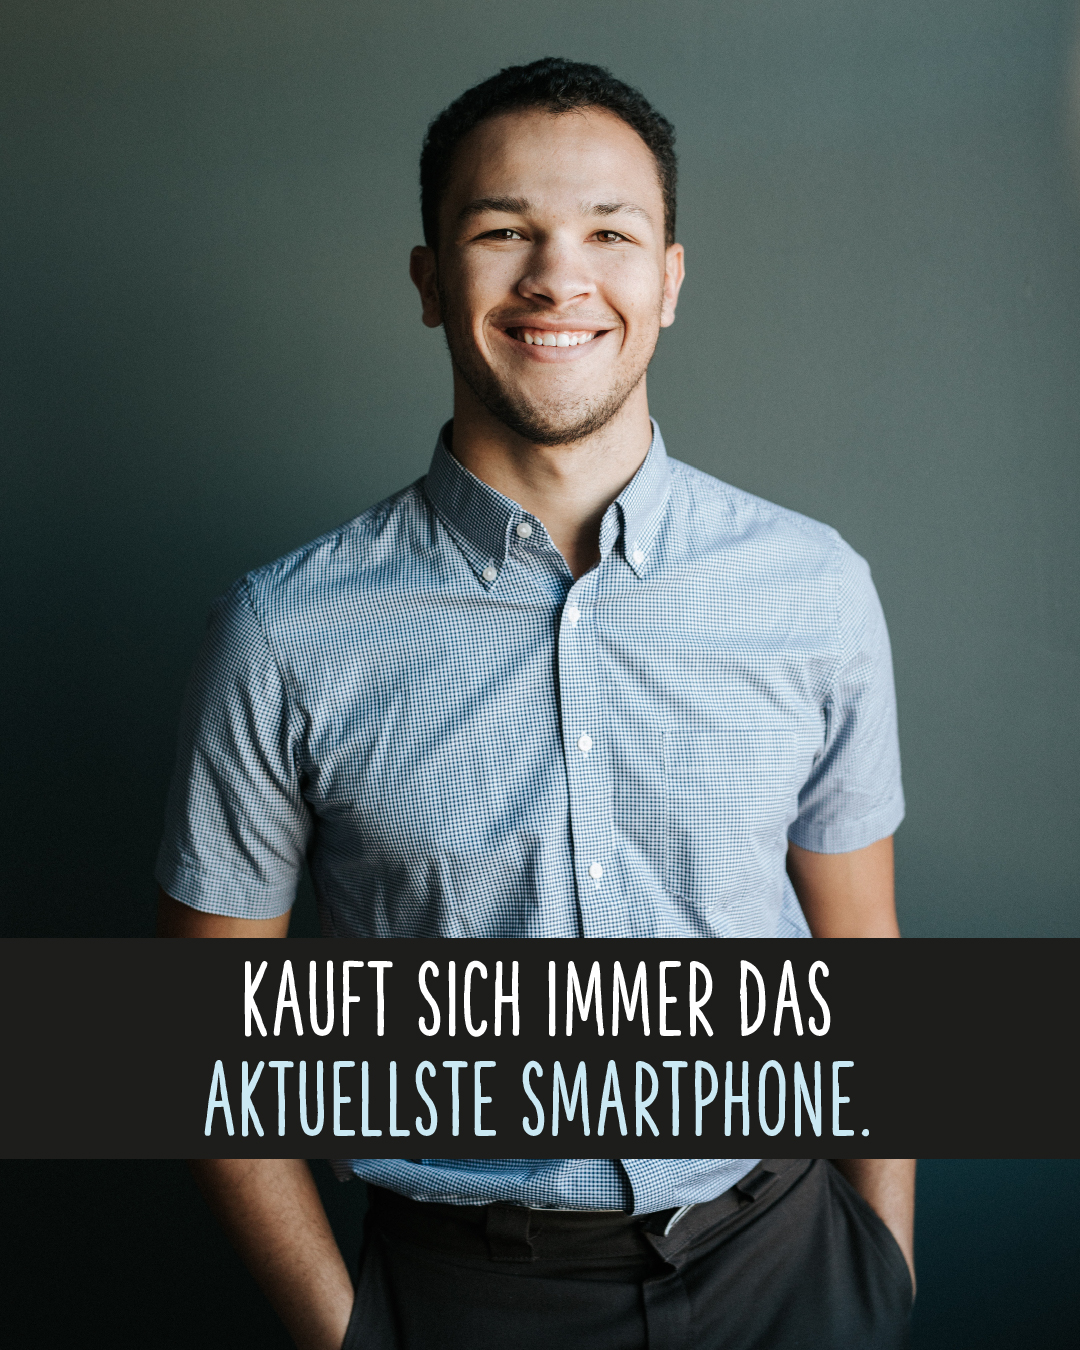 Lächelnder Mann im Business-Outfit .Text darunter: Kauft sich immer das aktuellste Smartphone.